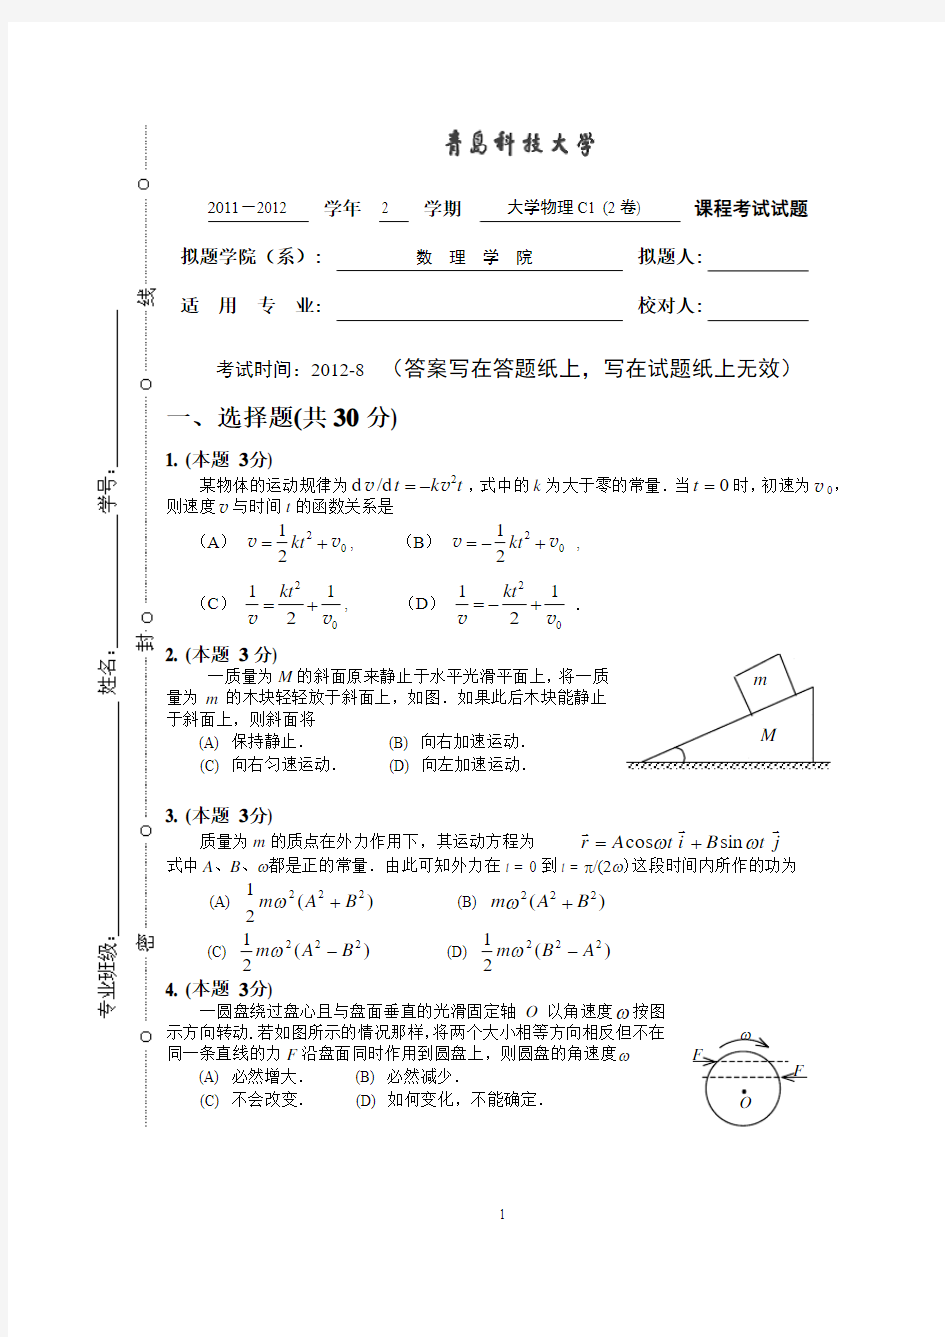 青岛科技大学11级大学物理C(上)2卷